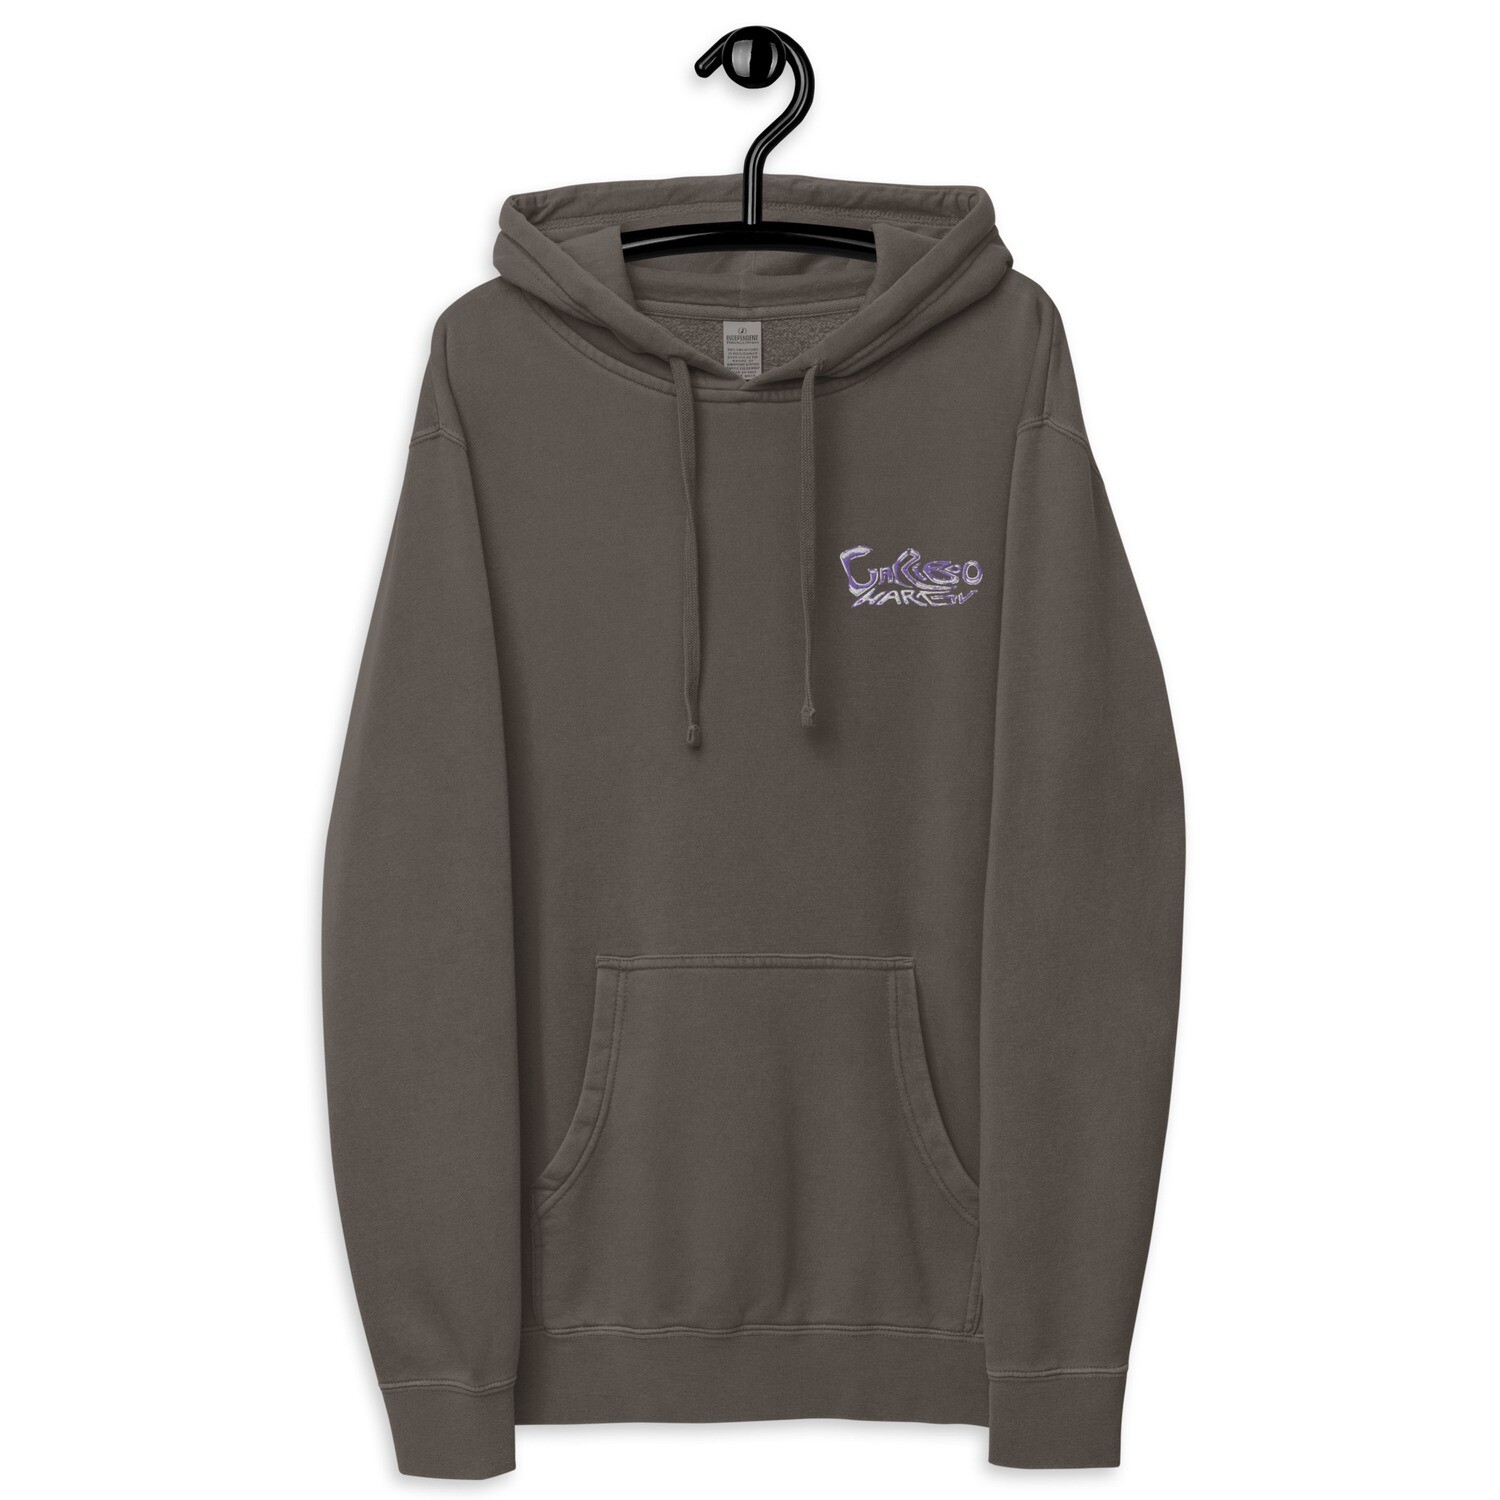 Purple Cuckoo pull-over hoodie unisex